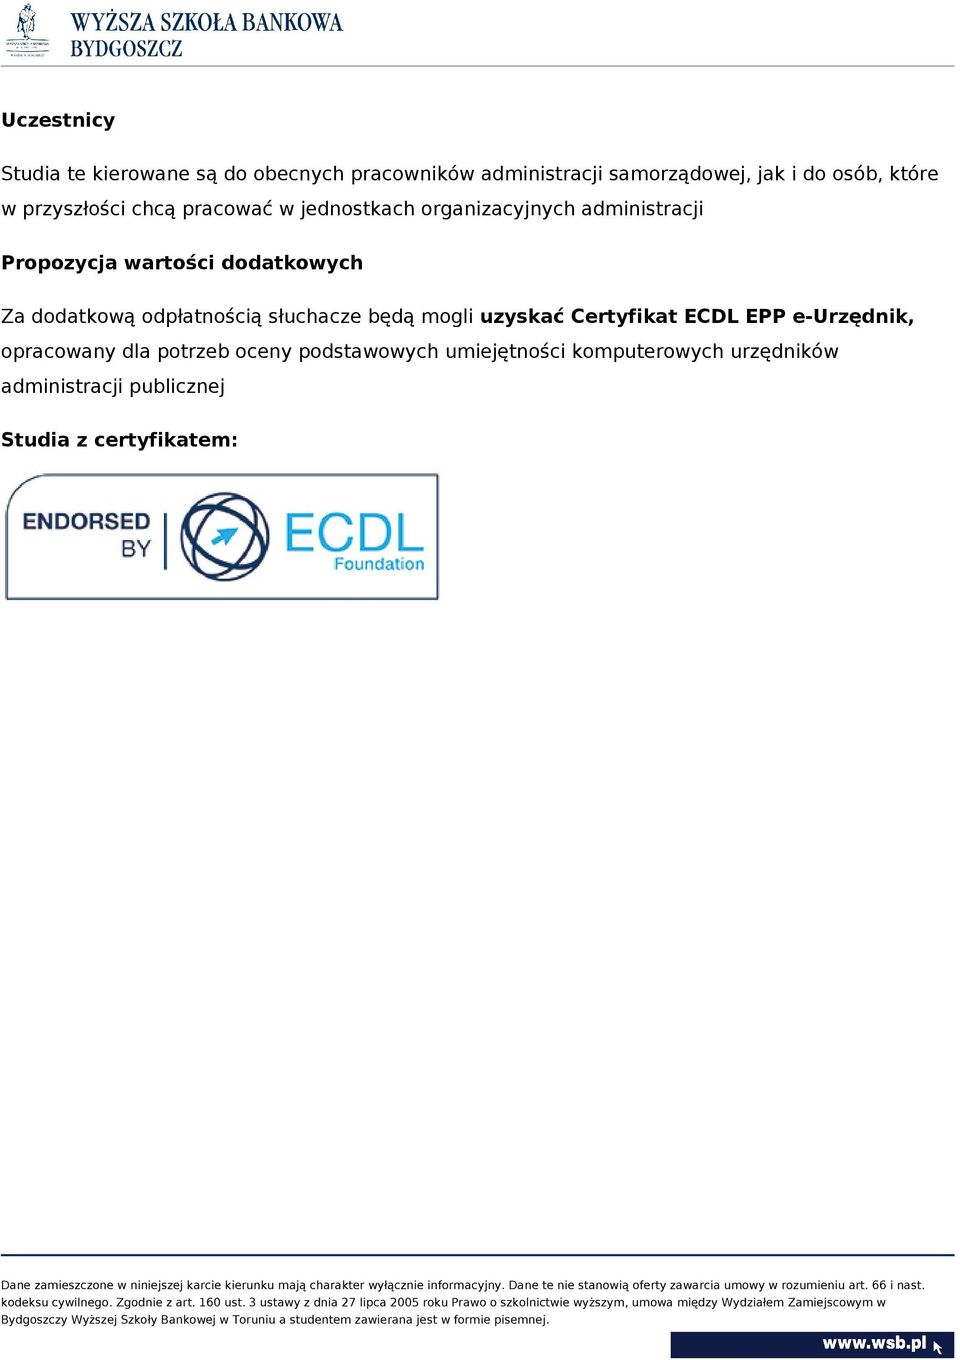 dodatkową odpłatnością słuchacze będą mogli uzyskać Certyfikat ECDL EPP e-urzędnik, opracowany dla potrzeb